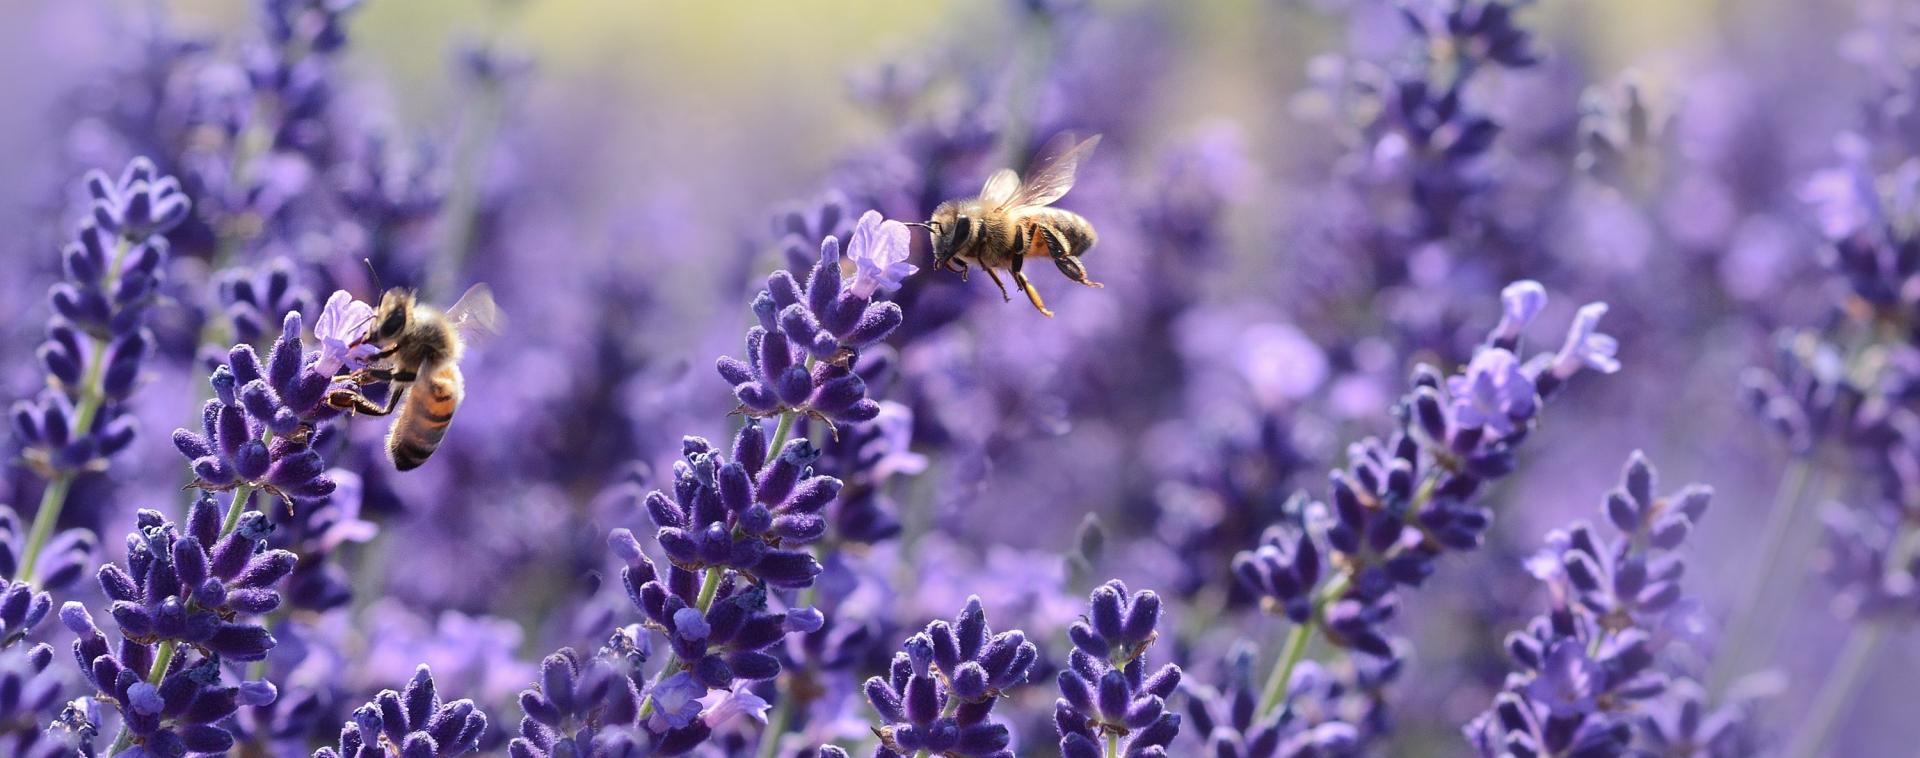 bees on purple flowers